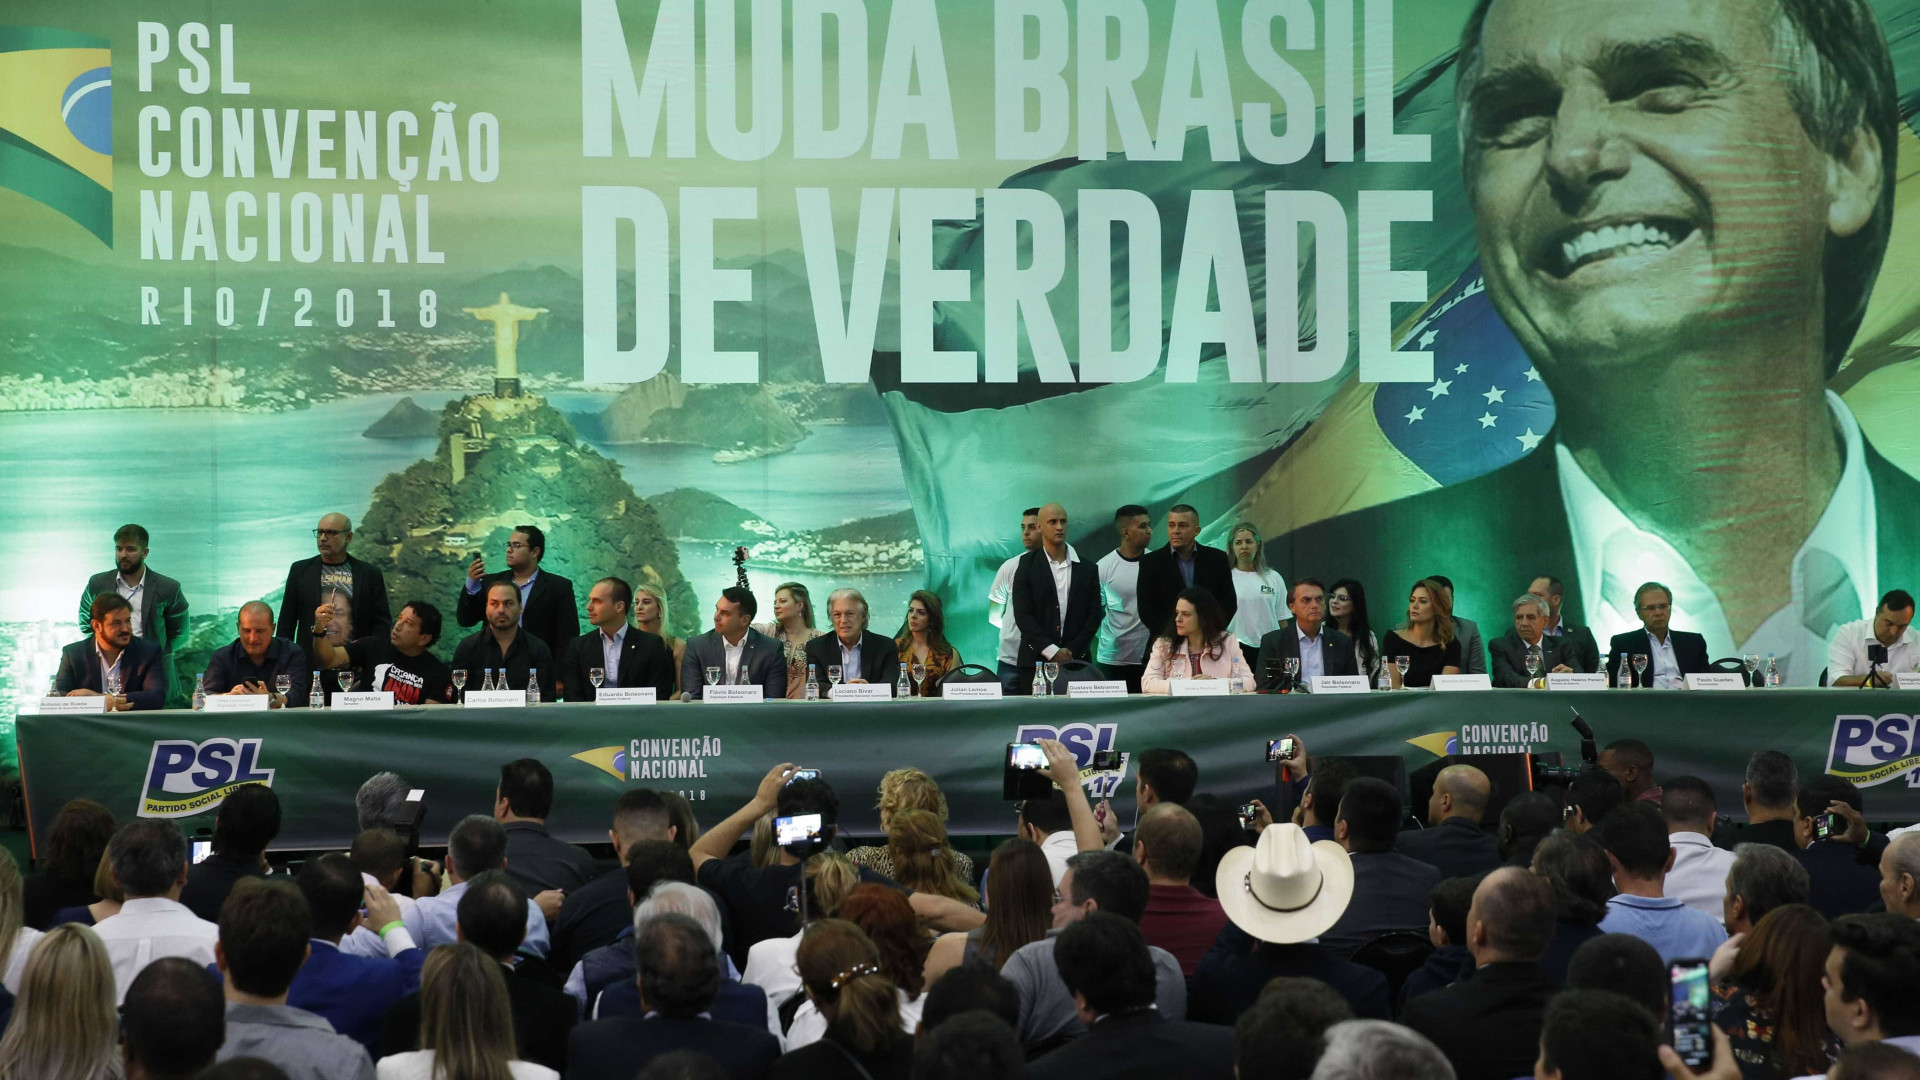 Nanico até 2018, PSL cresceu com Bolsonaro e agora vive escândalo